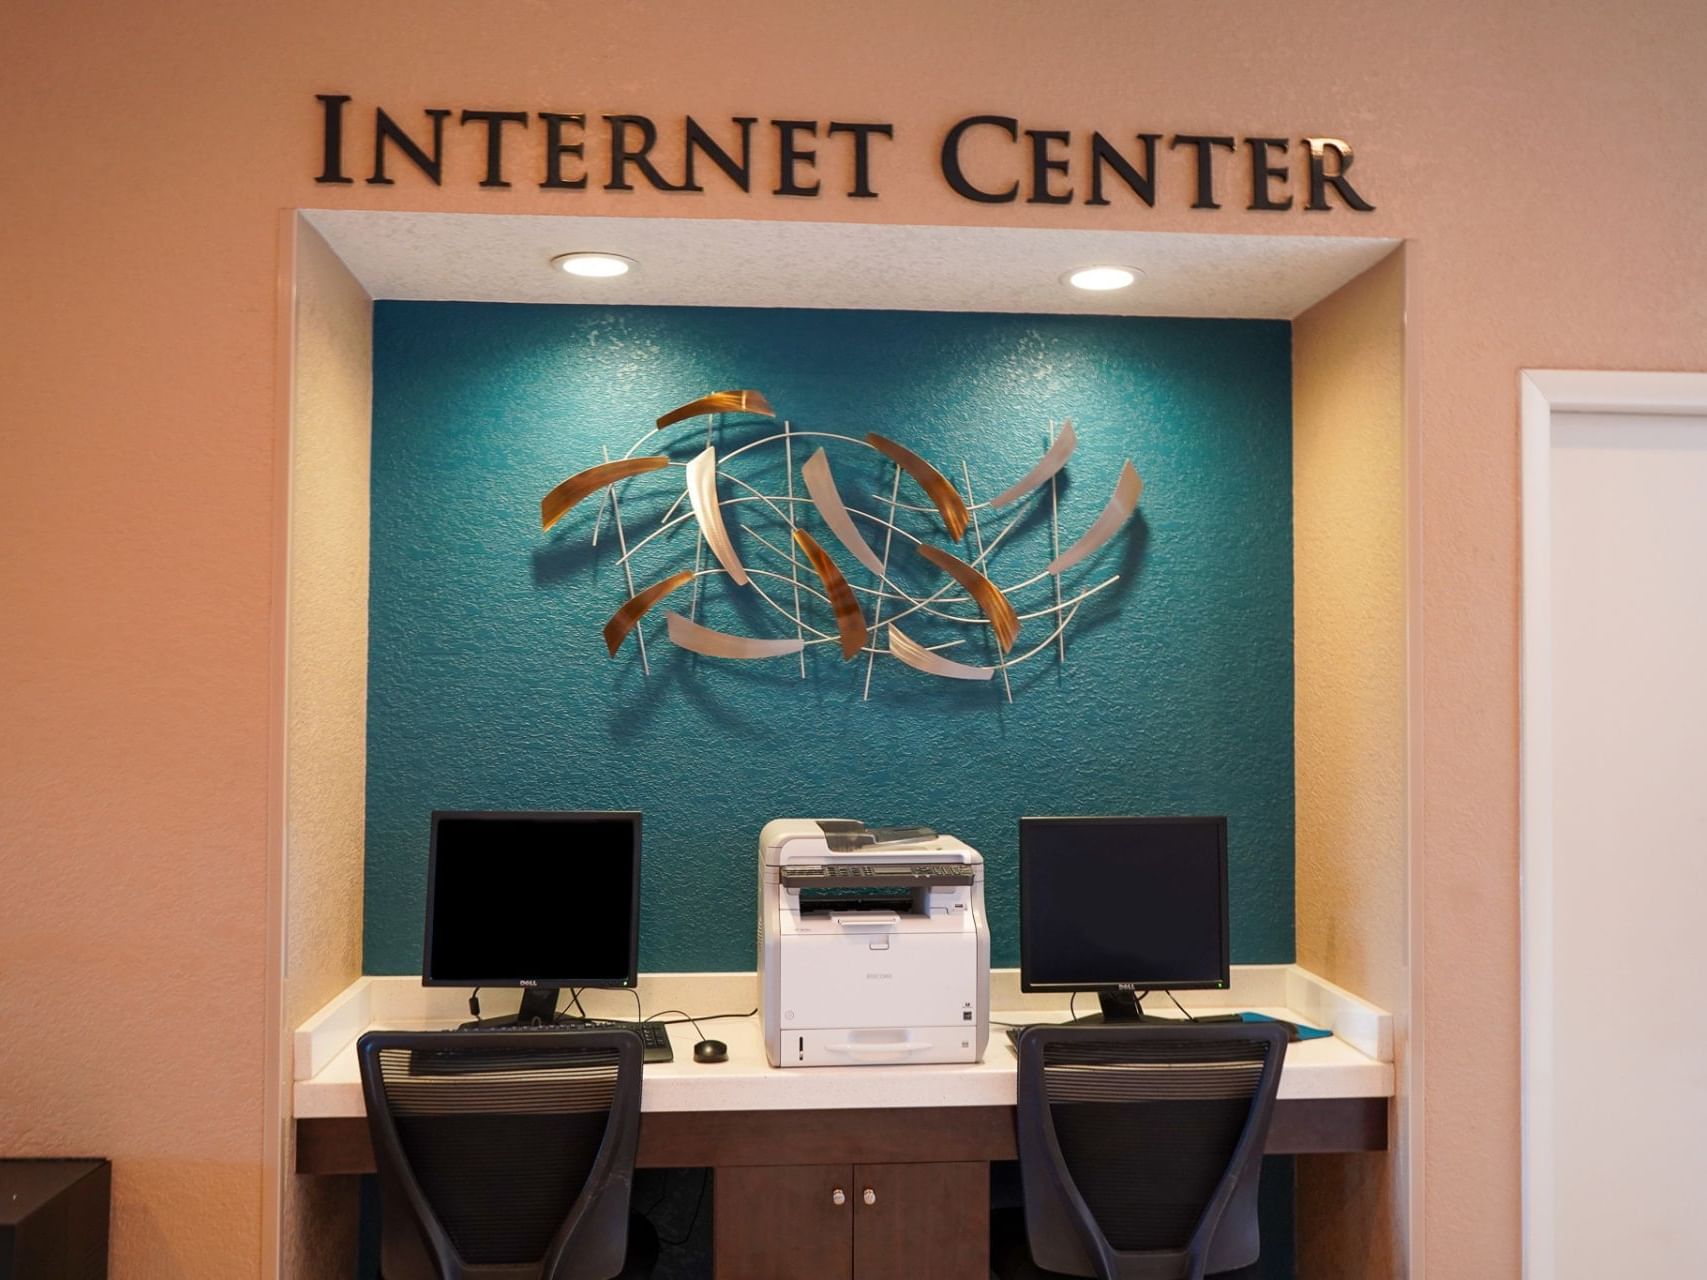 Workstations in the Internet Center at Rosen Inn International